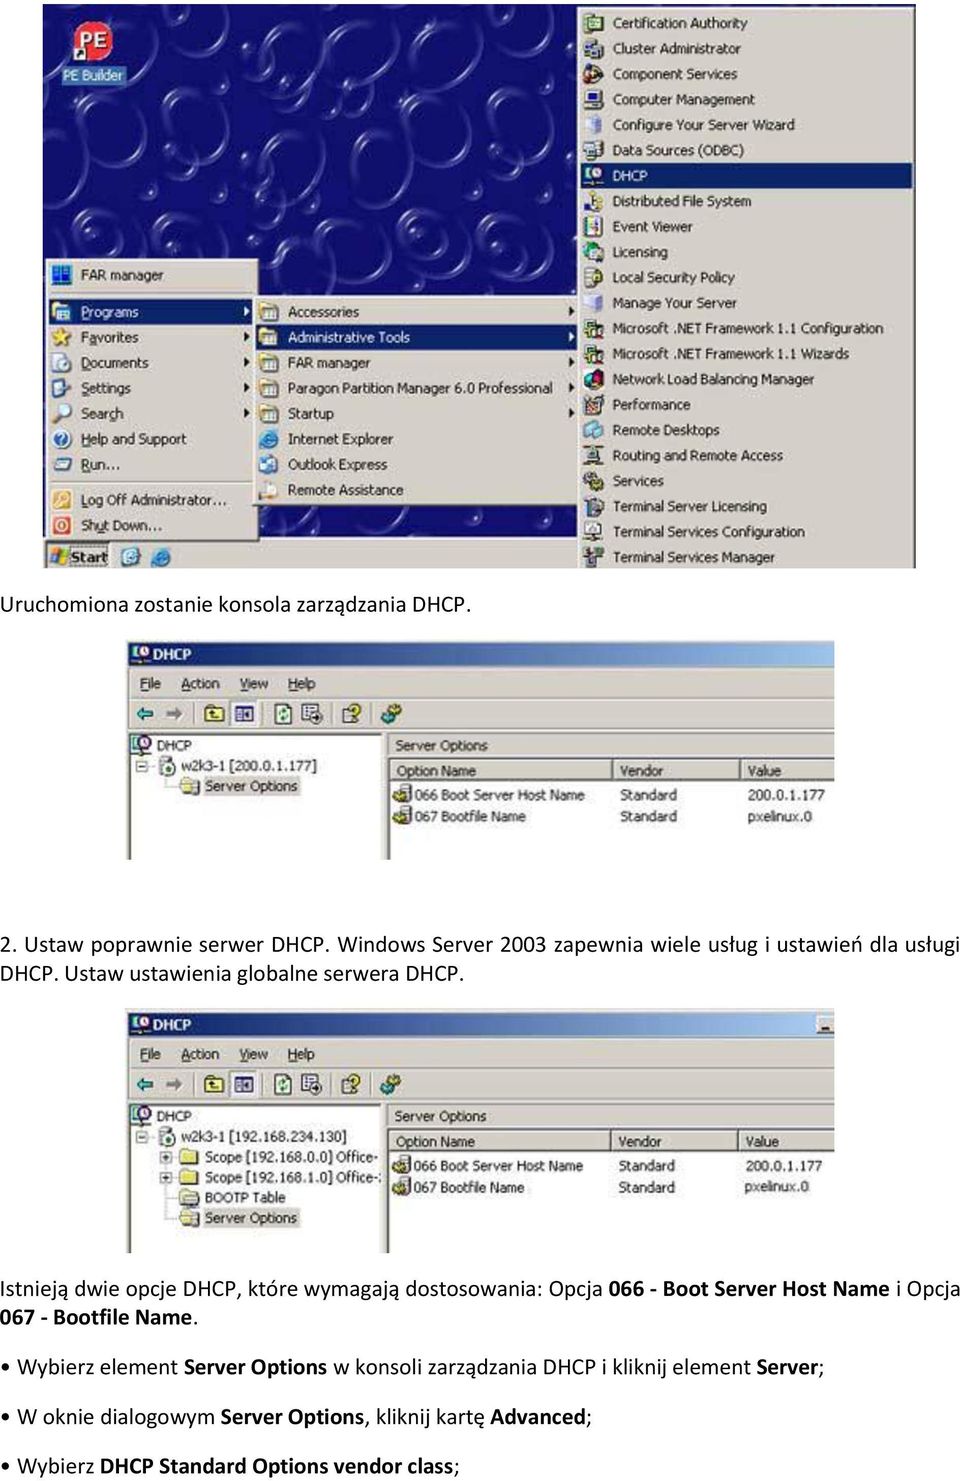 Istnieją dwie opcje DHCP, które wymagają dostosowania: Opcja 066 - Boot Server Host Name i Opcja 067 - Bootfile Name.